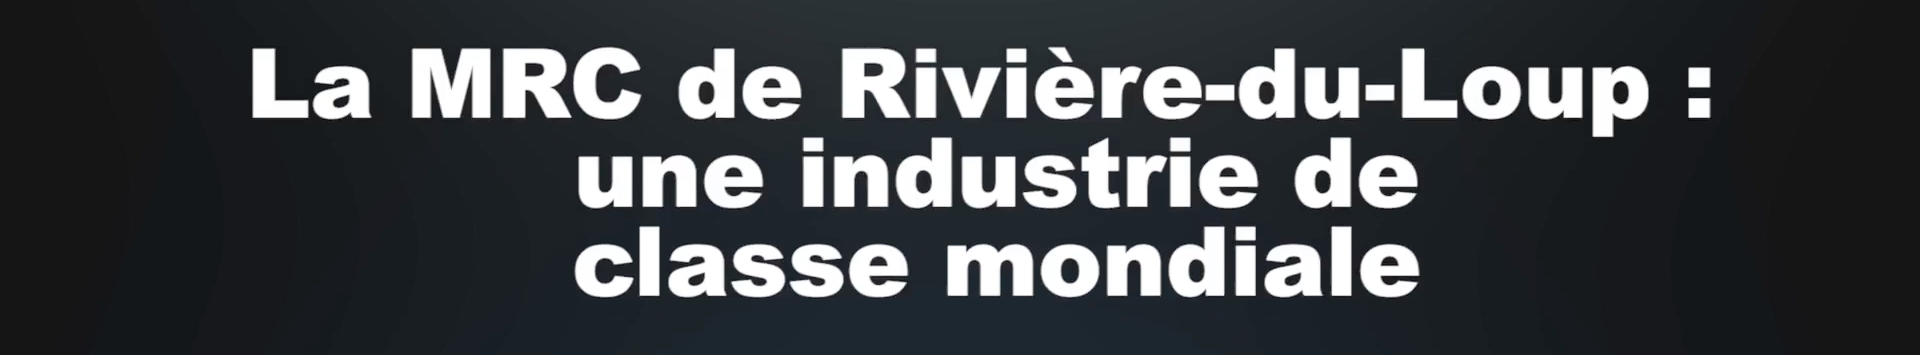 La MRC de Rivière-du-Loup : une industrie de classe mondiale